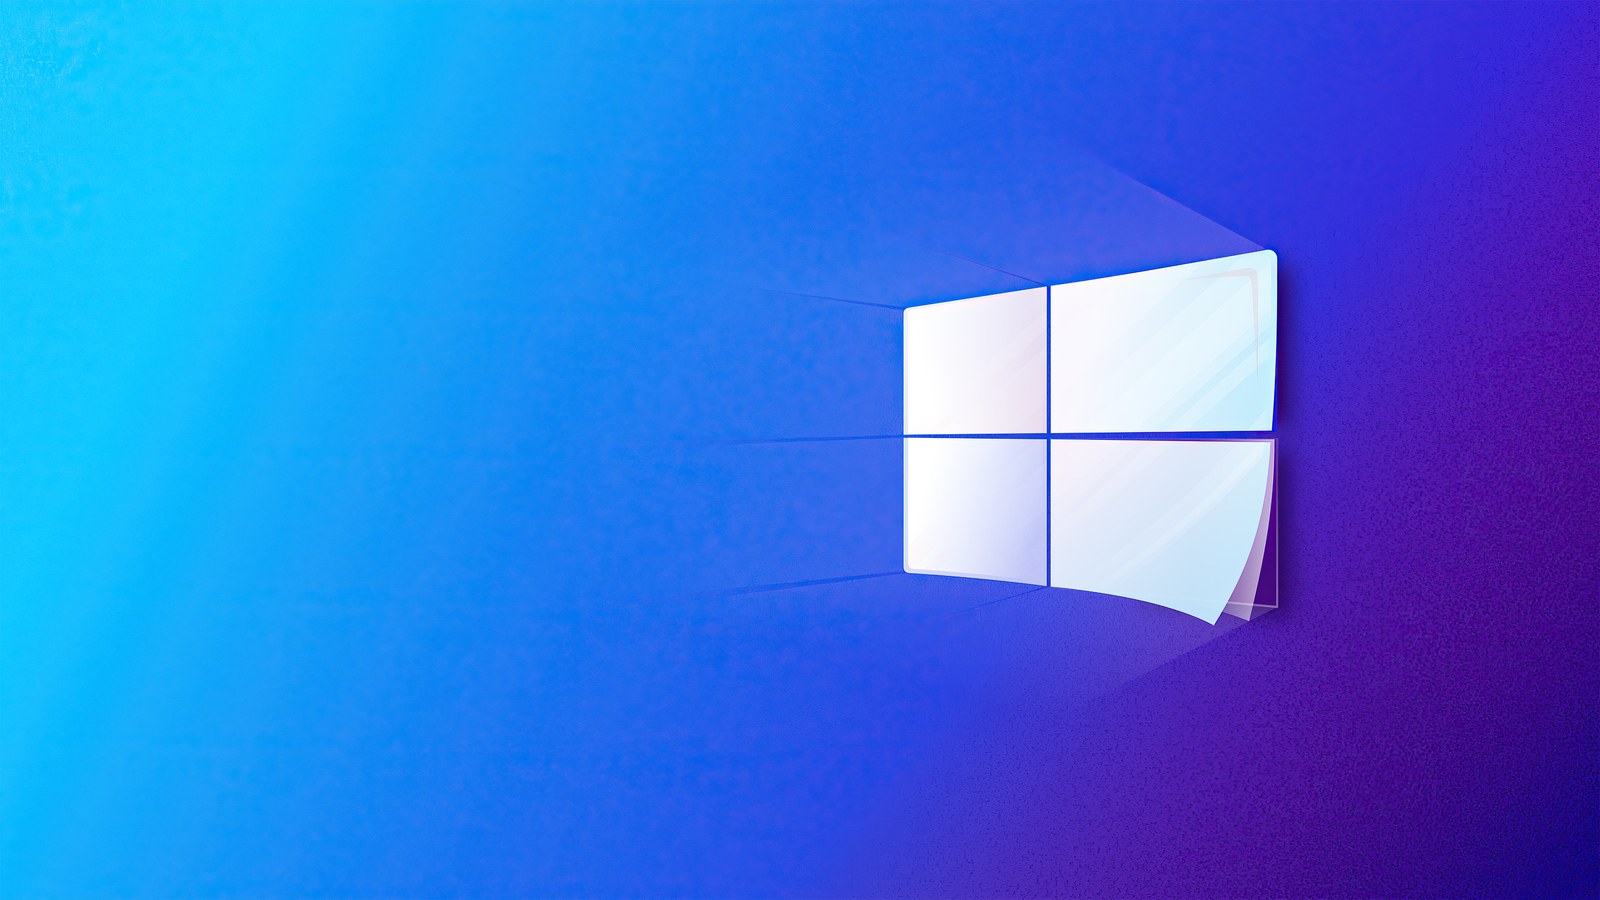 Logo Windows 10 được thiết kế đơn giản và hiện đại, đem lại sự chuyên nghiệp cho bất kỳ máy tính nào. Logo này luôn gợi nhớ đến sự phát triển và tiến bộ của công nghệ, và sẽ là biểu tượng đáng giá cho mọi người yêu thích Windows